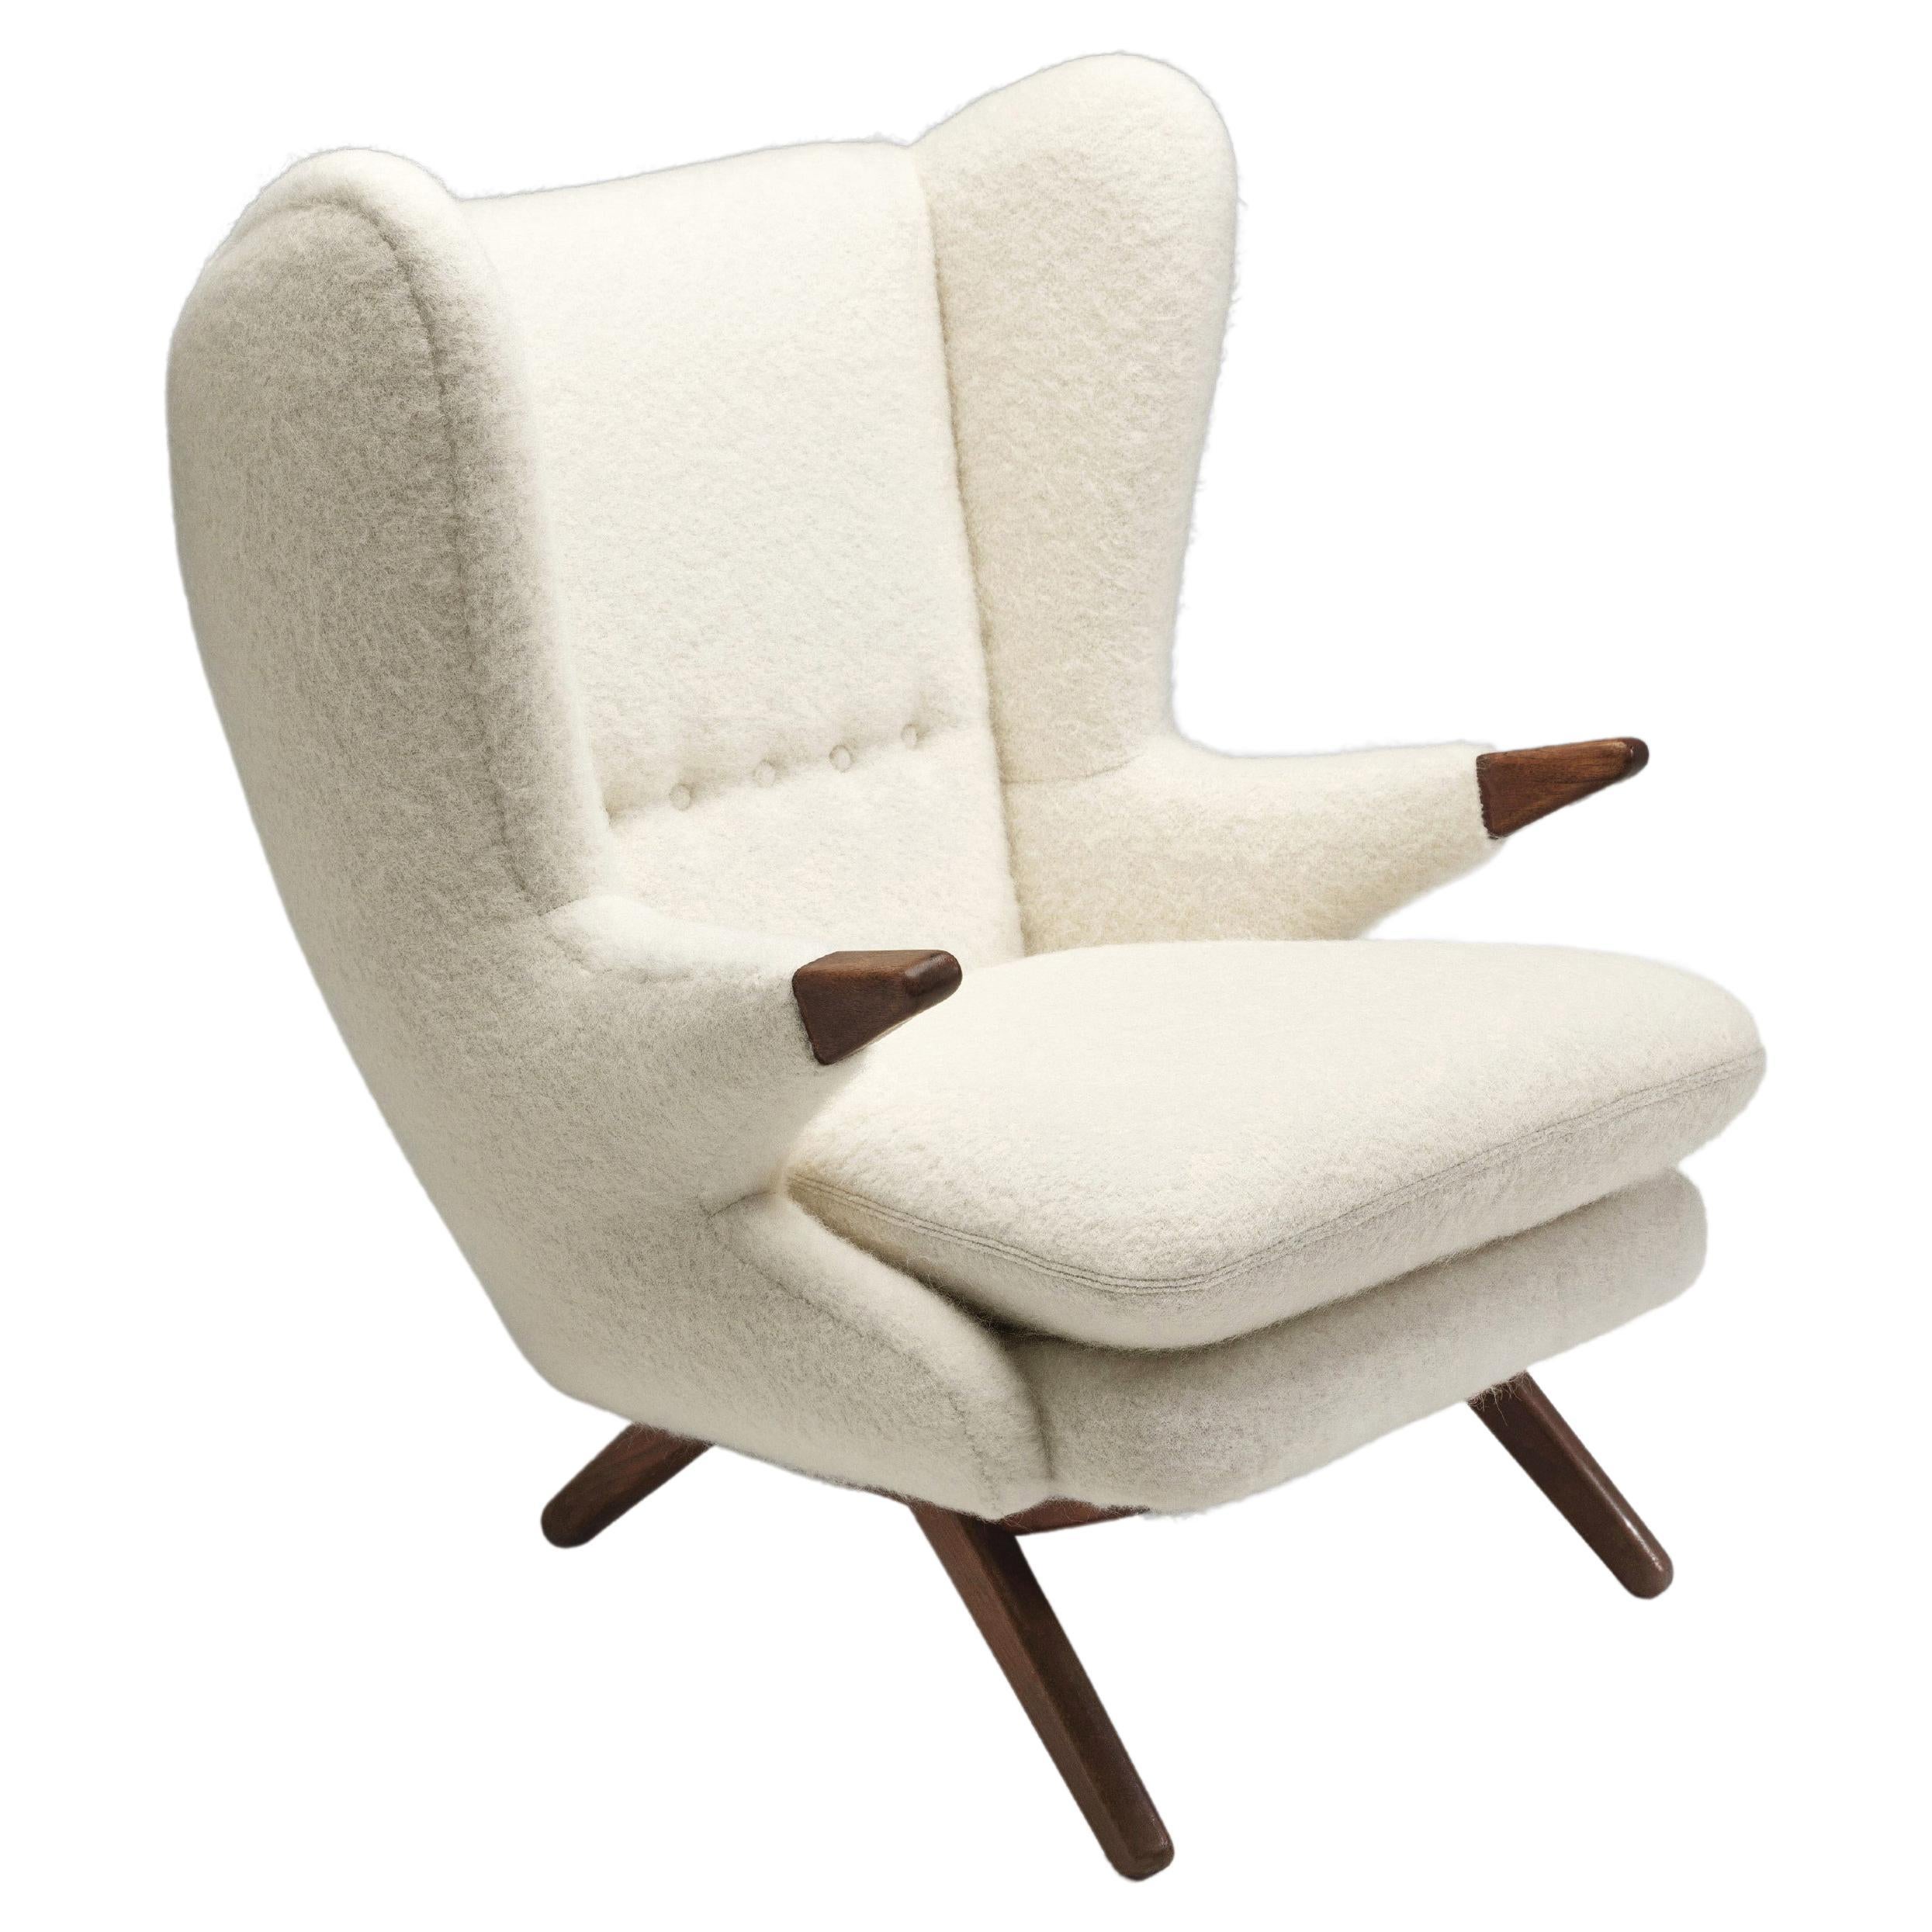 Svend Skipper “Model 91” Lounge Chair, Denmark 1960s